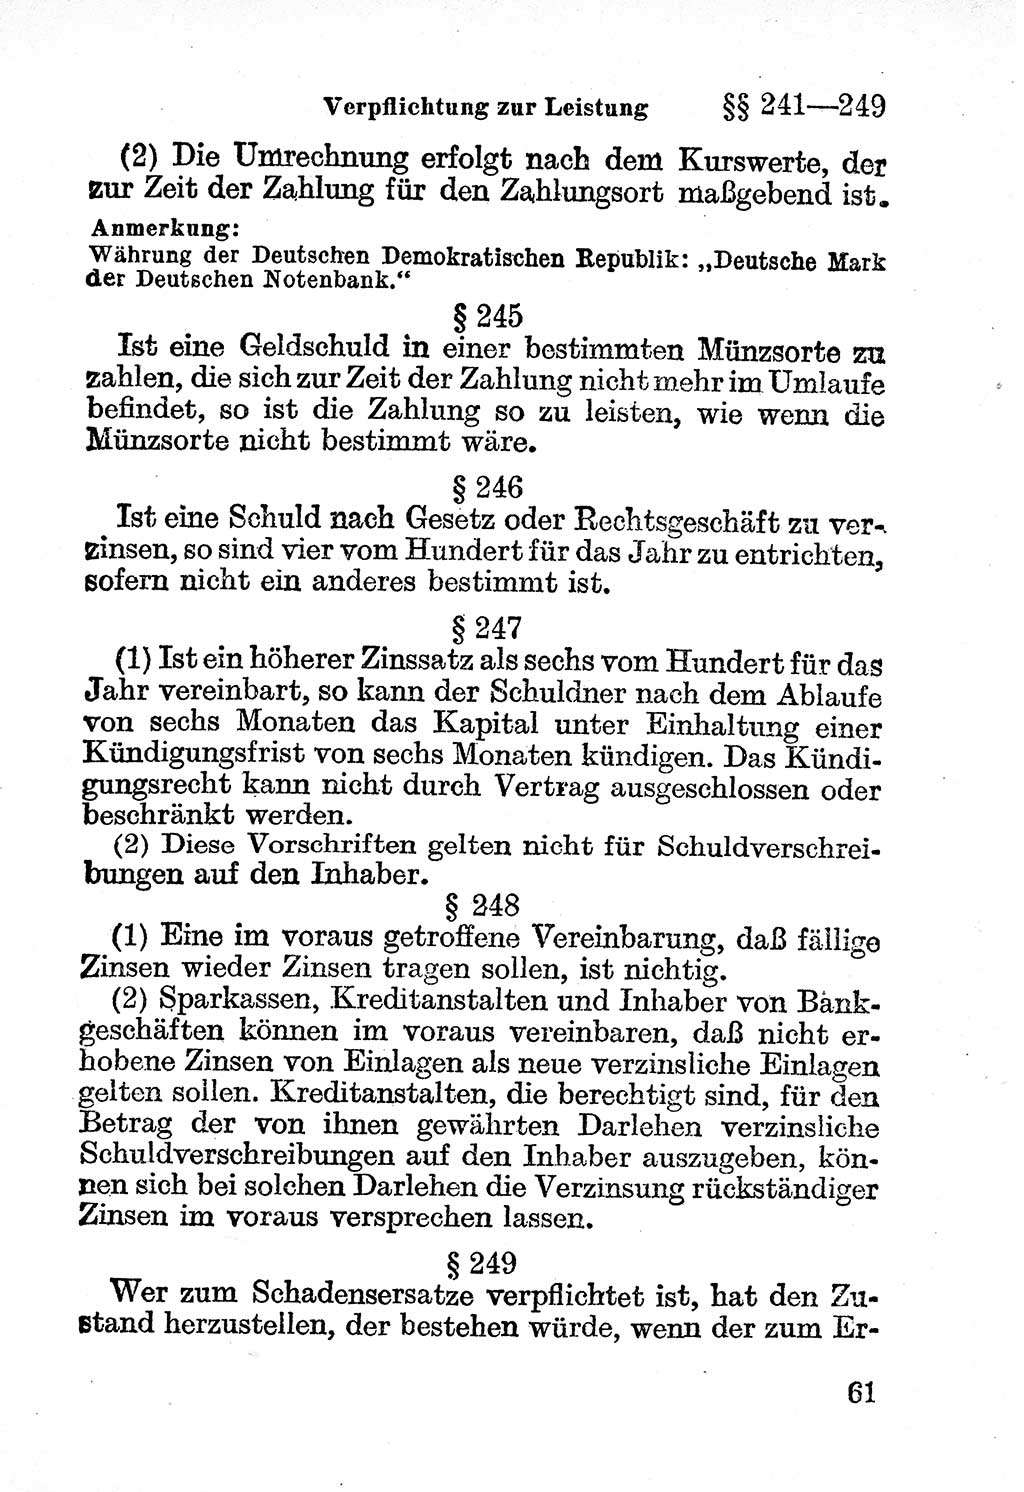 Bürgerliches Gesetzbuch (BGB) nebst wichtigen Nebengesetzen [Deutsche Demokratische Republik (DDR)] 1956, Seite 61 (BGB Nebenges. DDR 1956, S. 61)